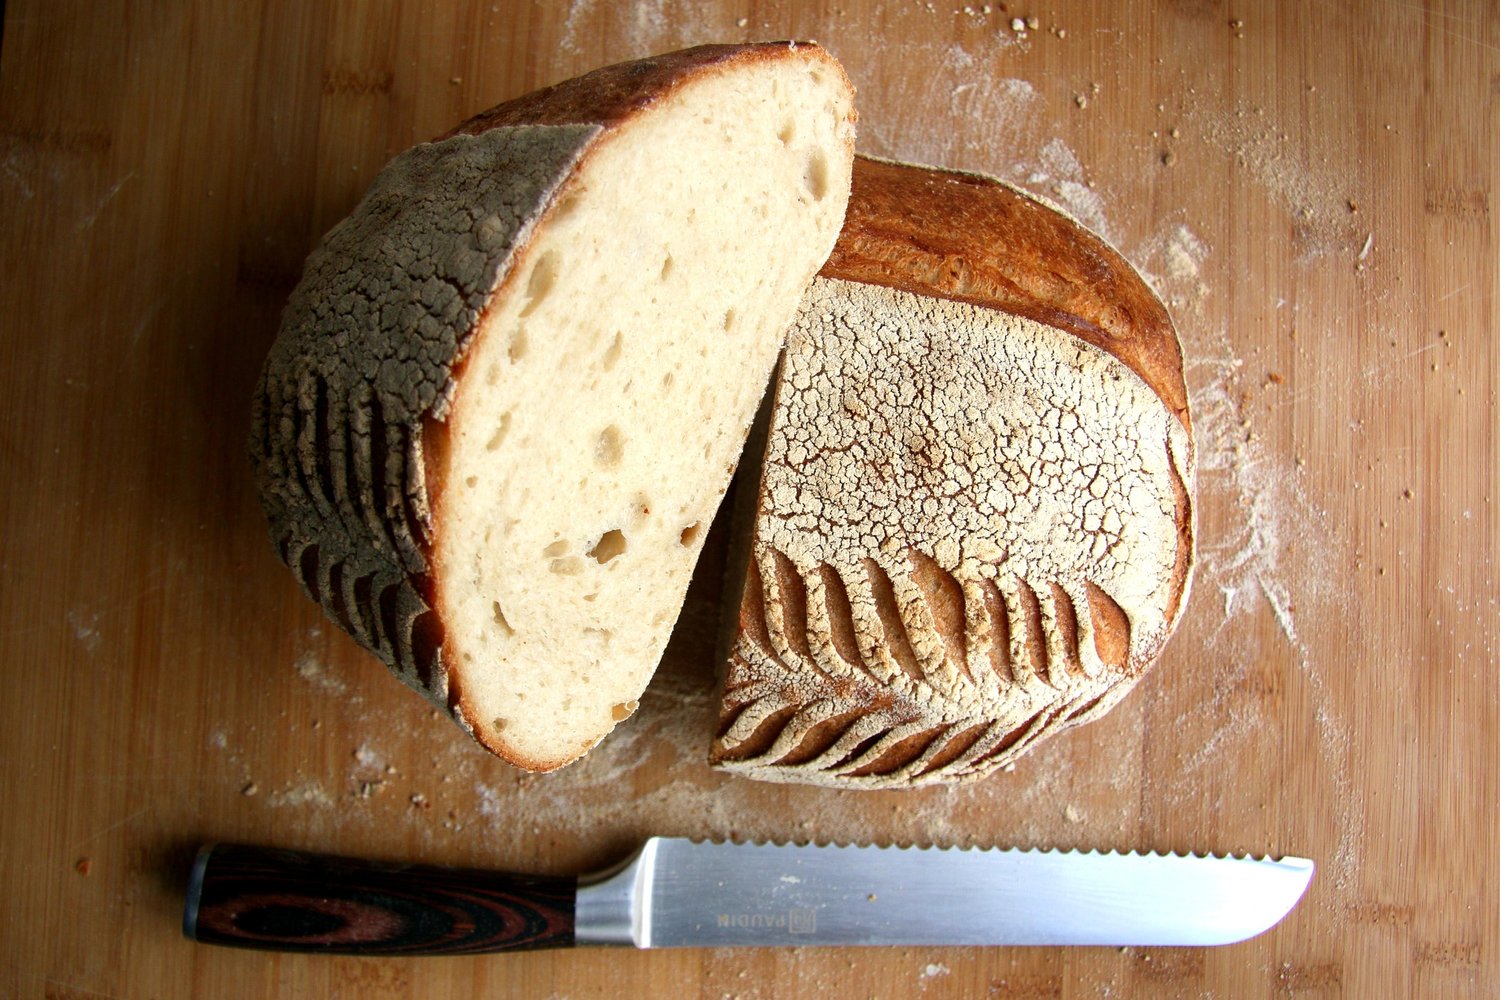 Bread loaf being cut